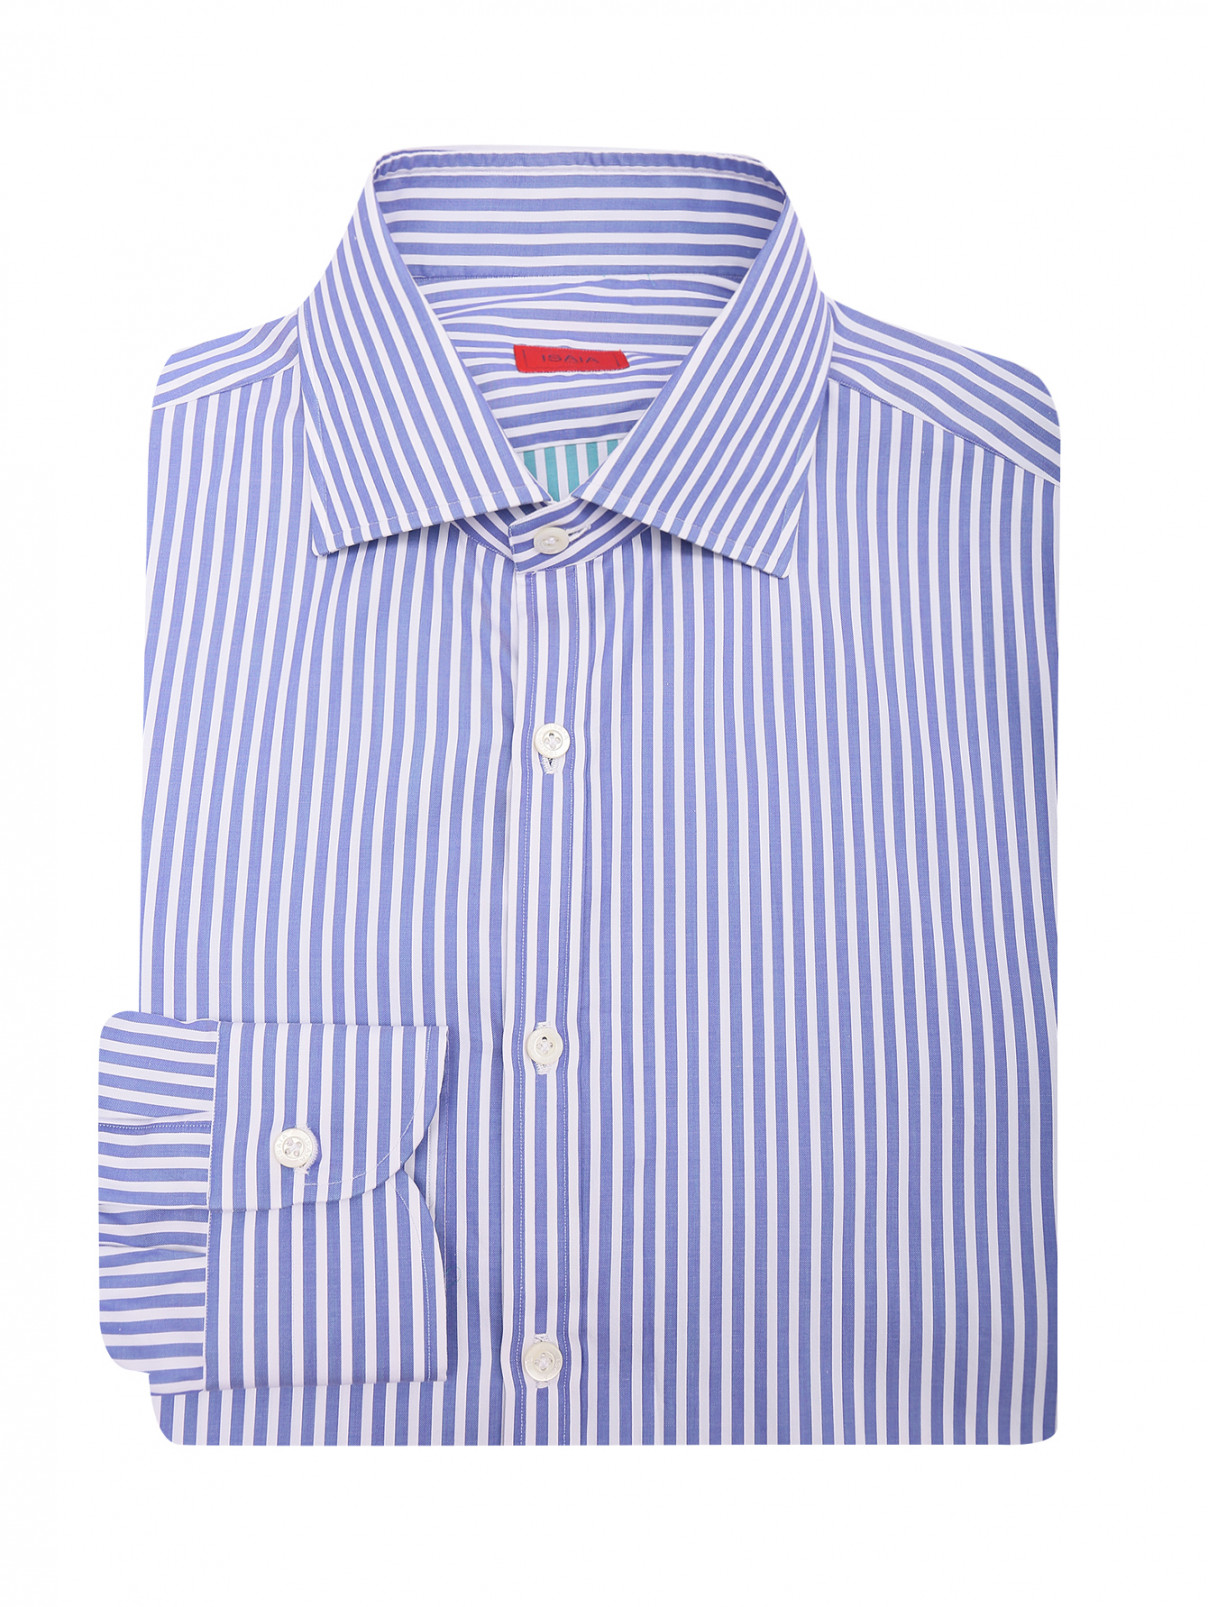 Рубашка из хлопка с узором полоска Isaia  –  Общий вид  – Цвет:  Синий